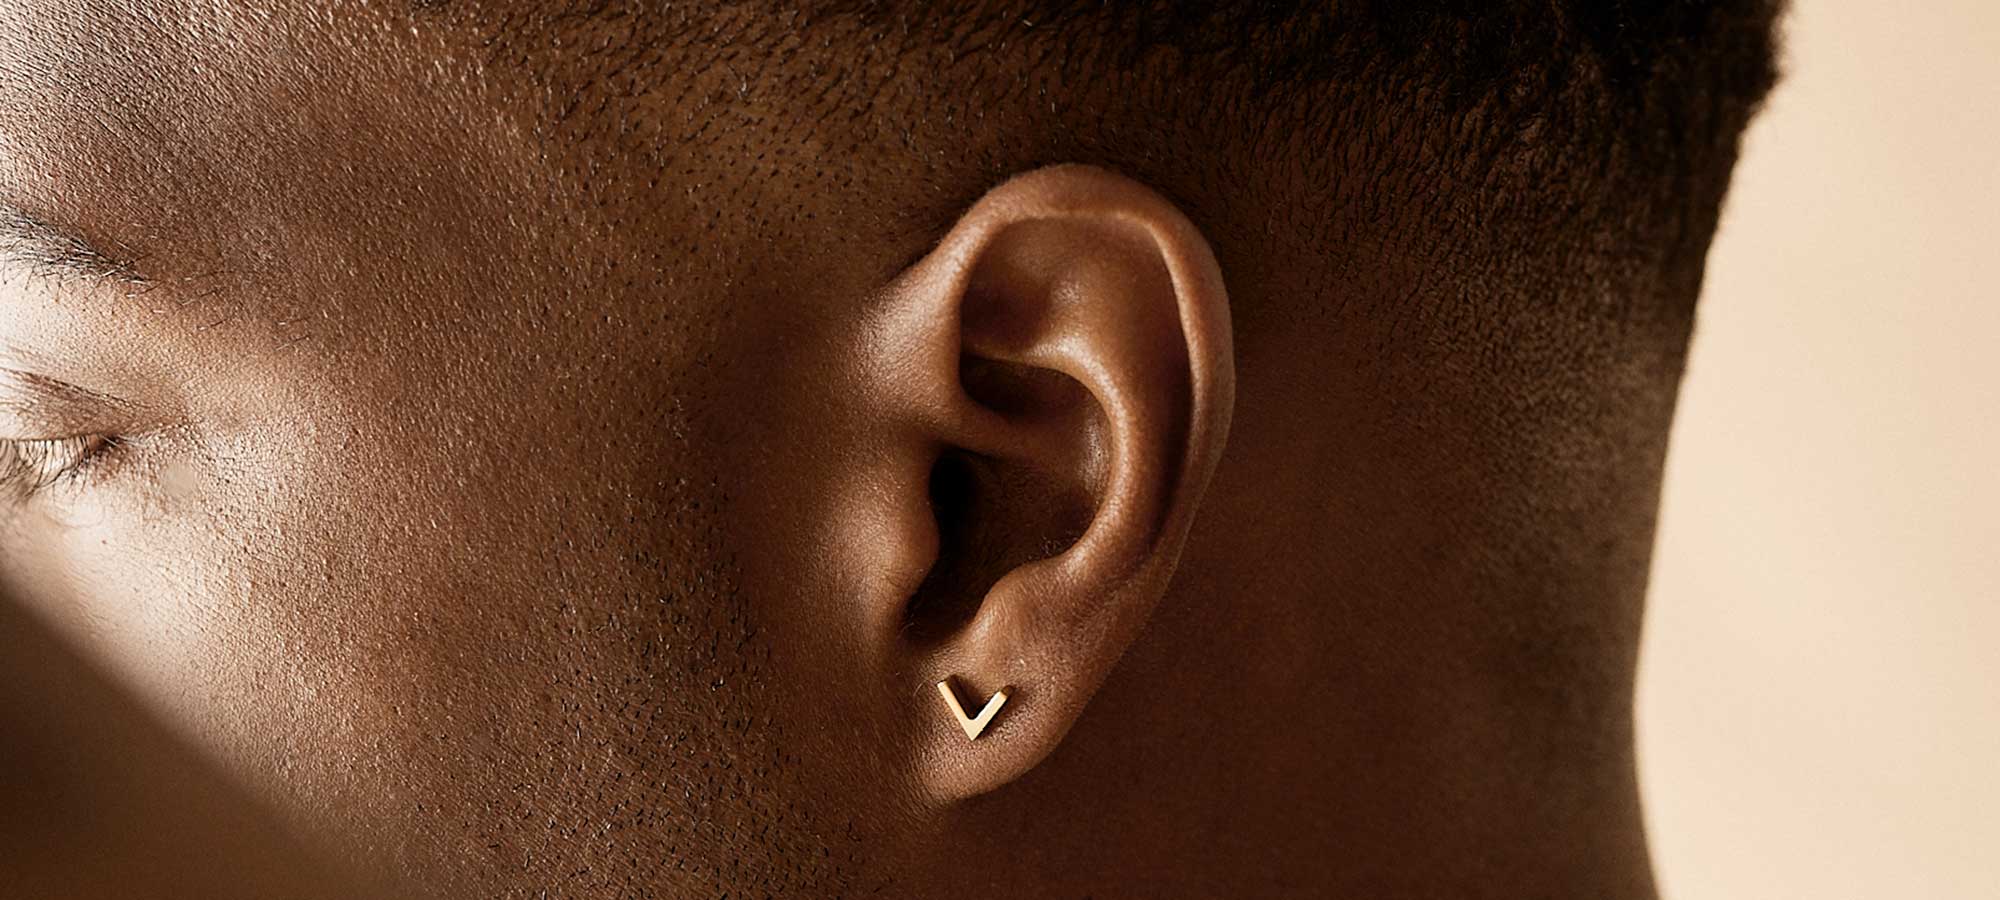 Hudvenlige øreringe til mænd